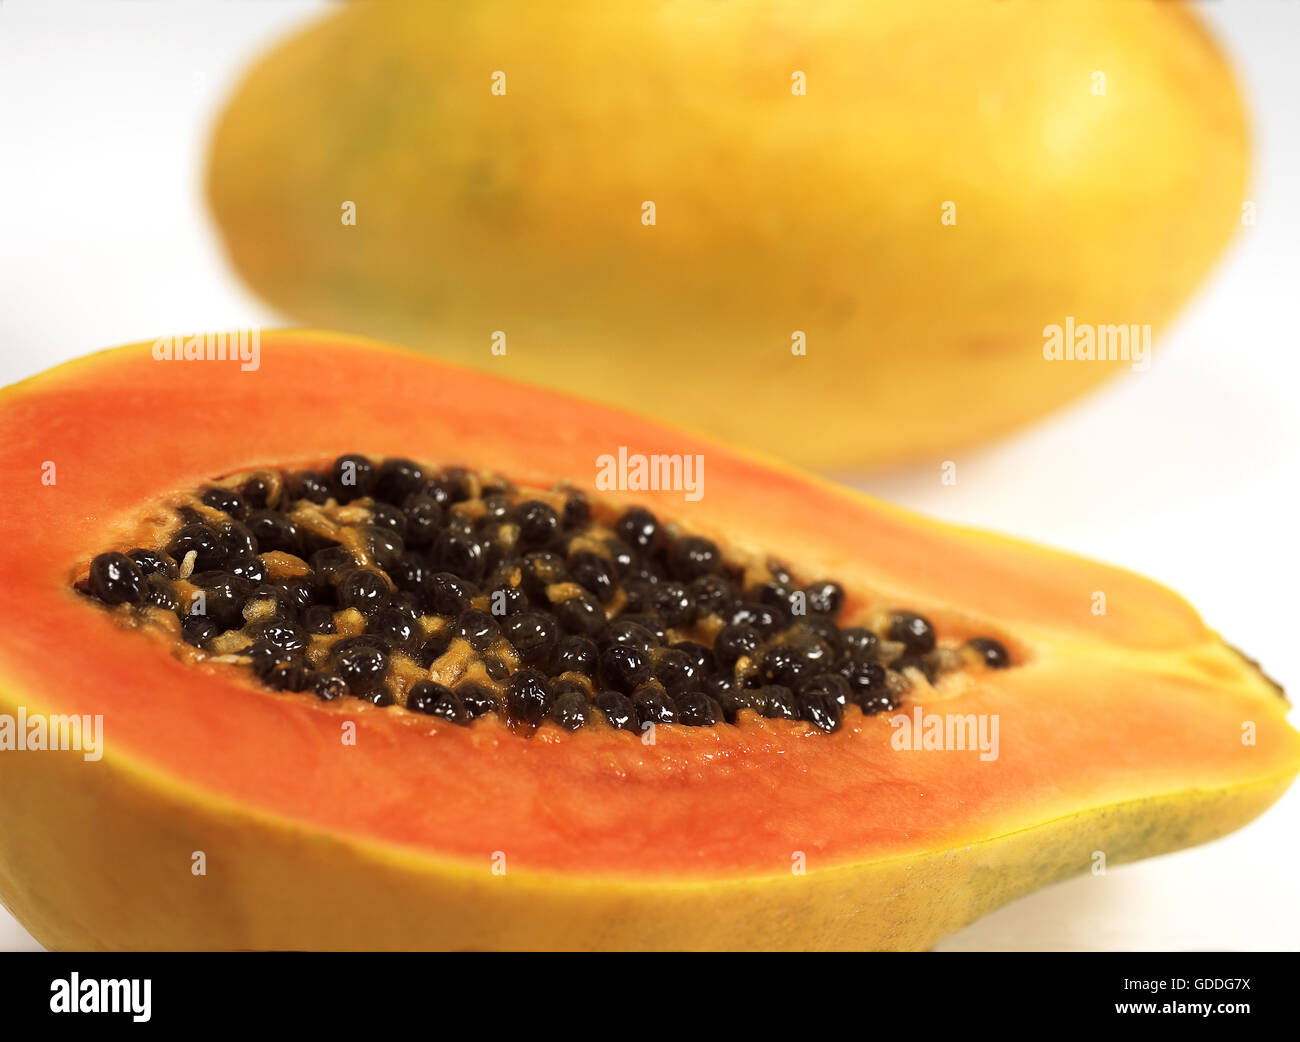 PAW PAW OR PAPAYA FRUIT carica papaya AGAINST WHITE BACKGROUND Stock Photo